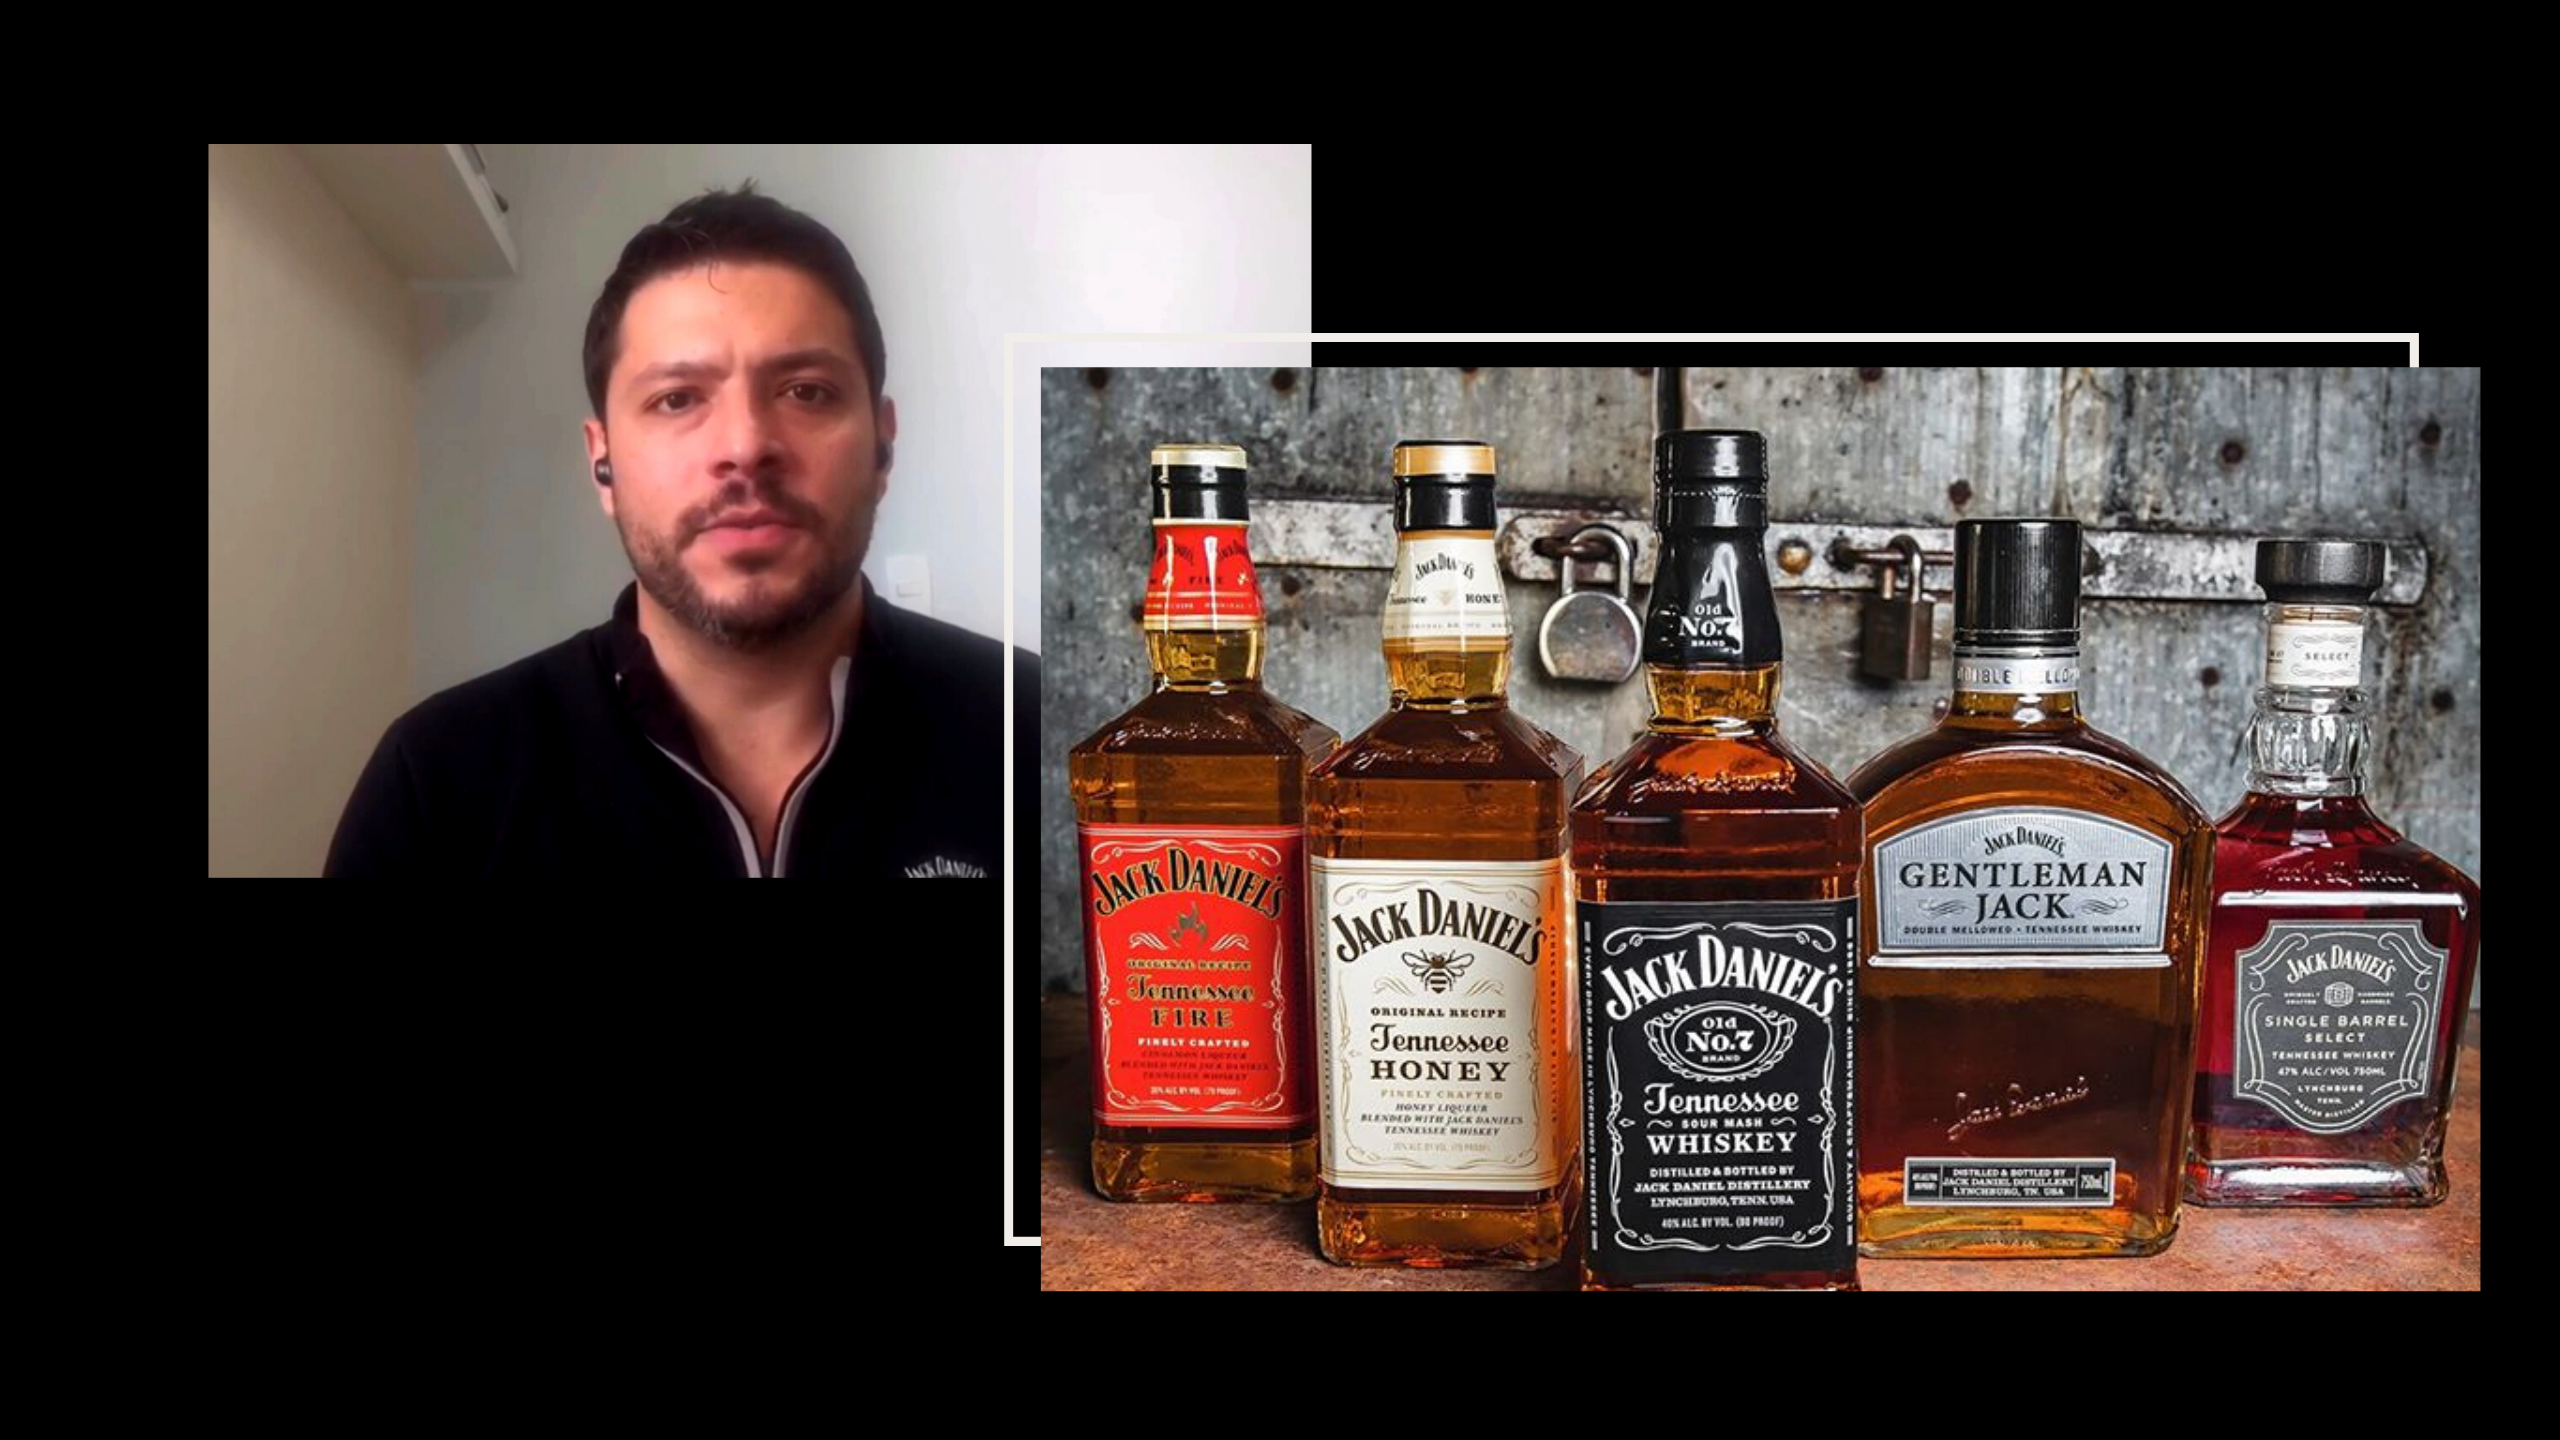 Jack Daniel’s em casa: Saiba como a tradicional marca de whisky reinventou seus canais de vendas e comunicação na pandemia